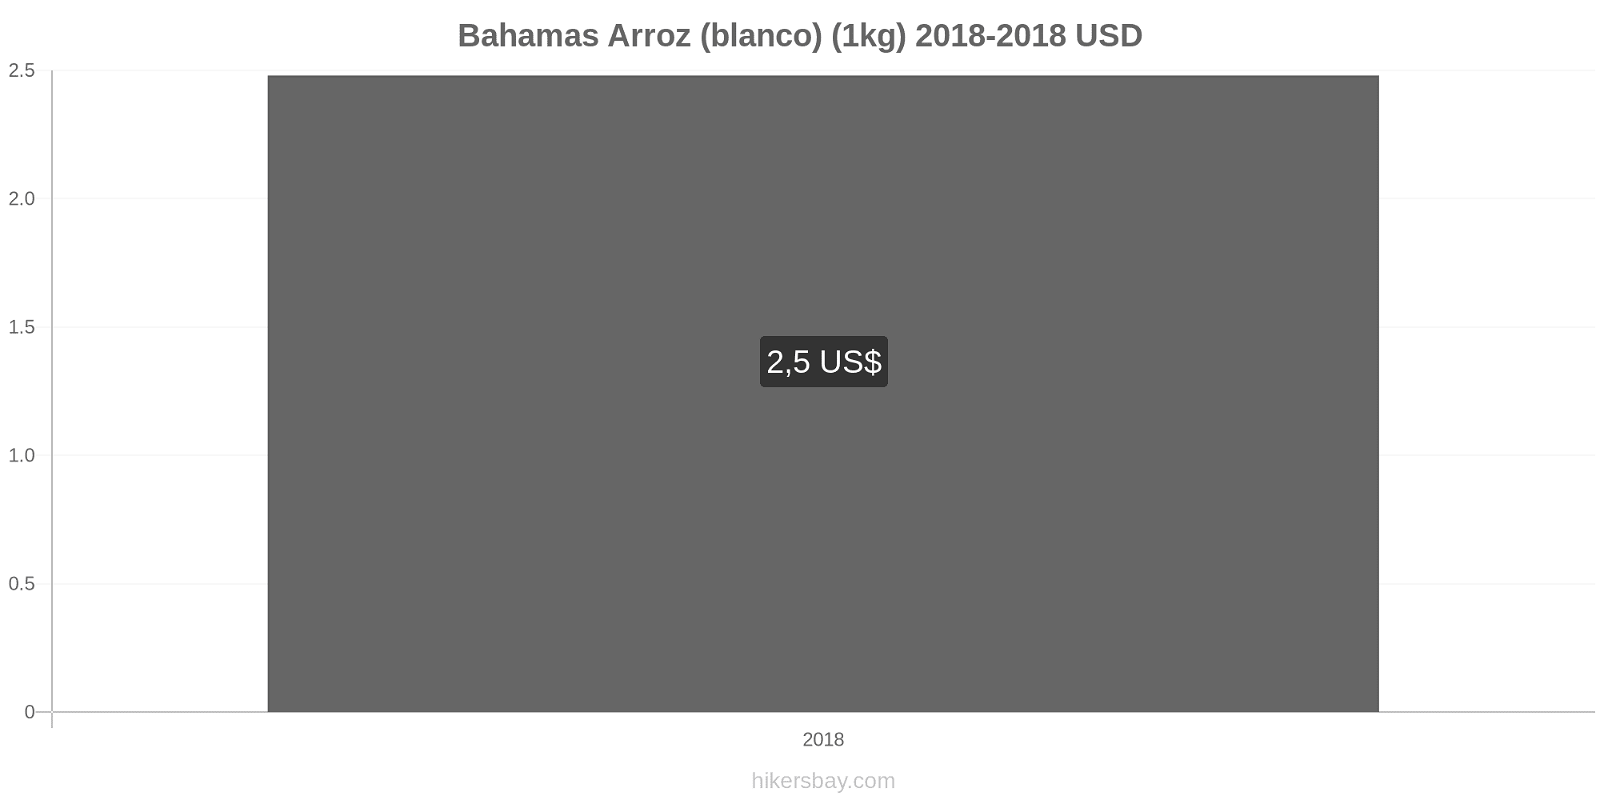 Bahamas cambios de precios Kilo de arroz blanco hikersbay.com